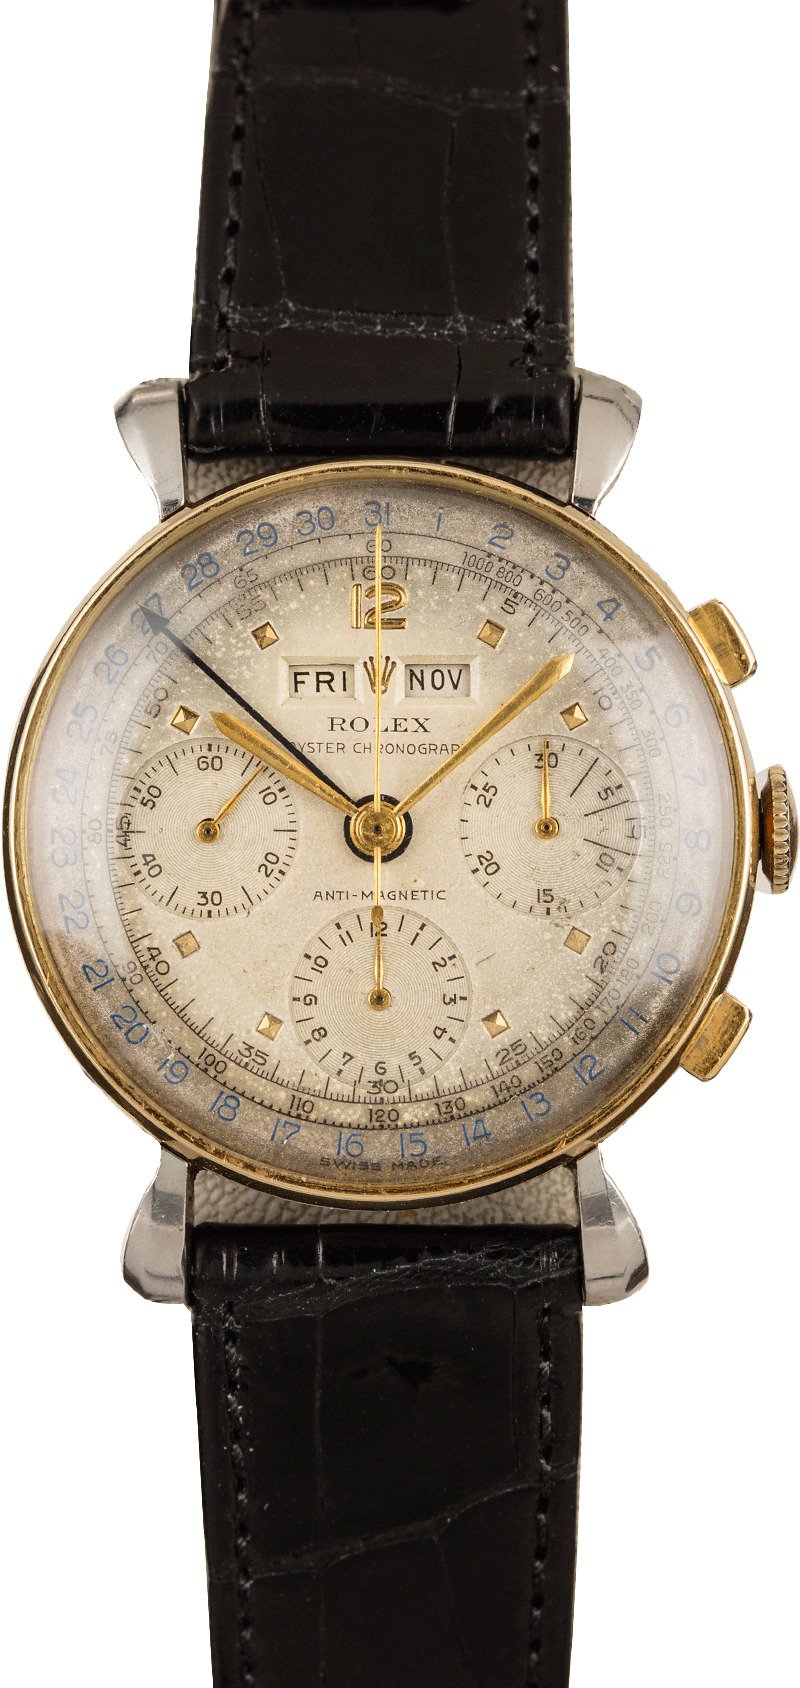 vintage rolex chronograph